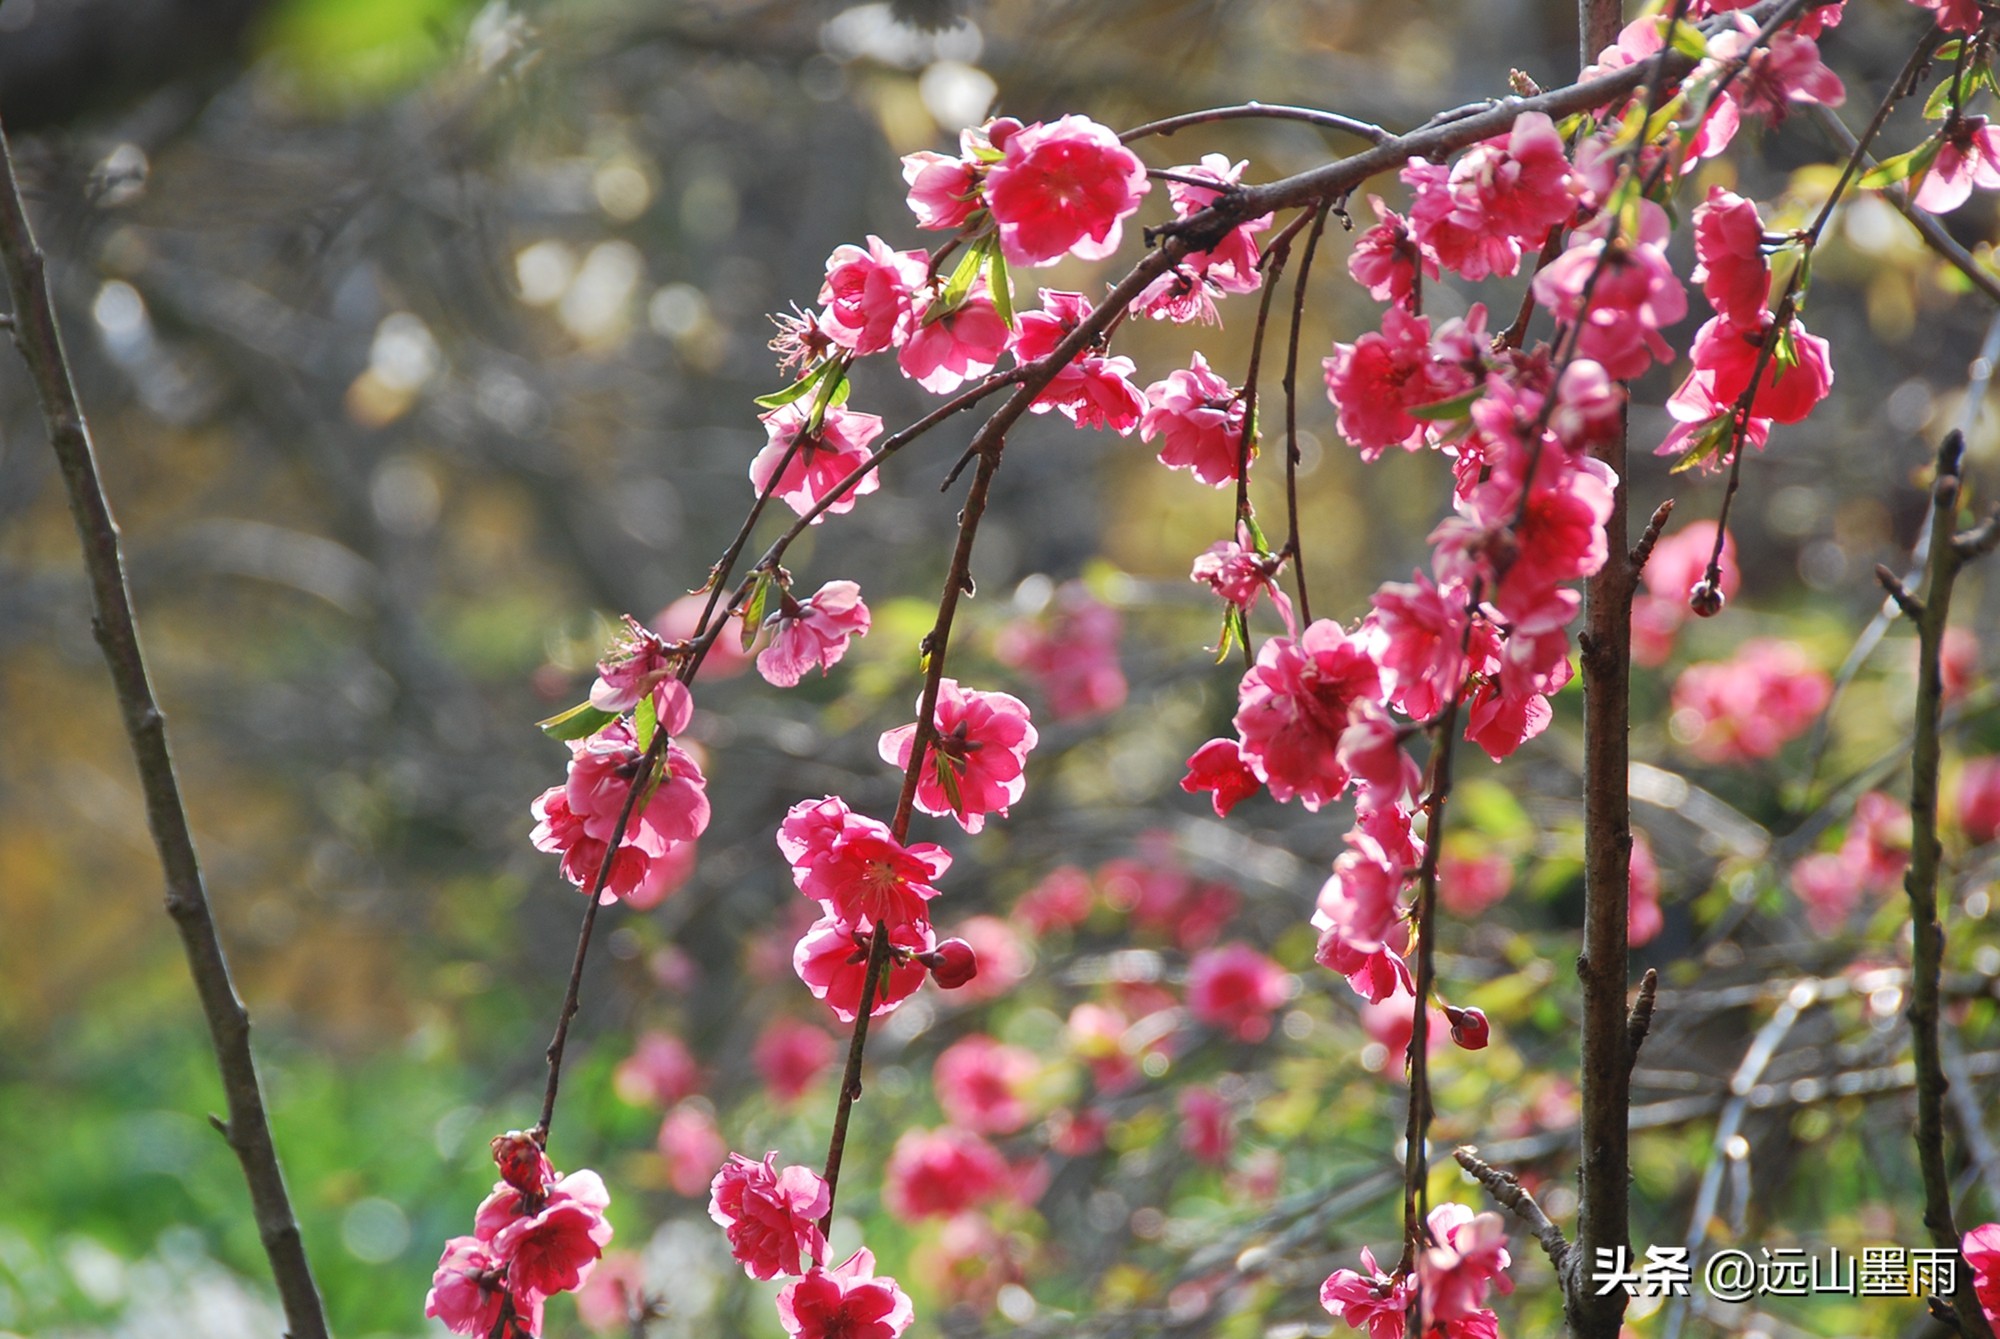 碧桃:一种观花不食果的桃树,盛开在春天里,是一帘很美的花瀑